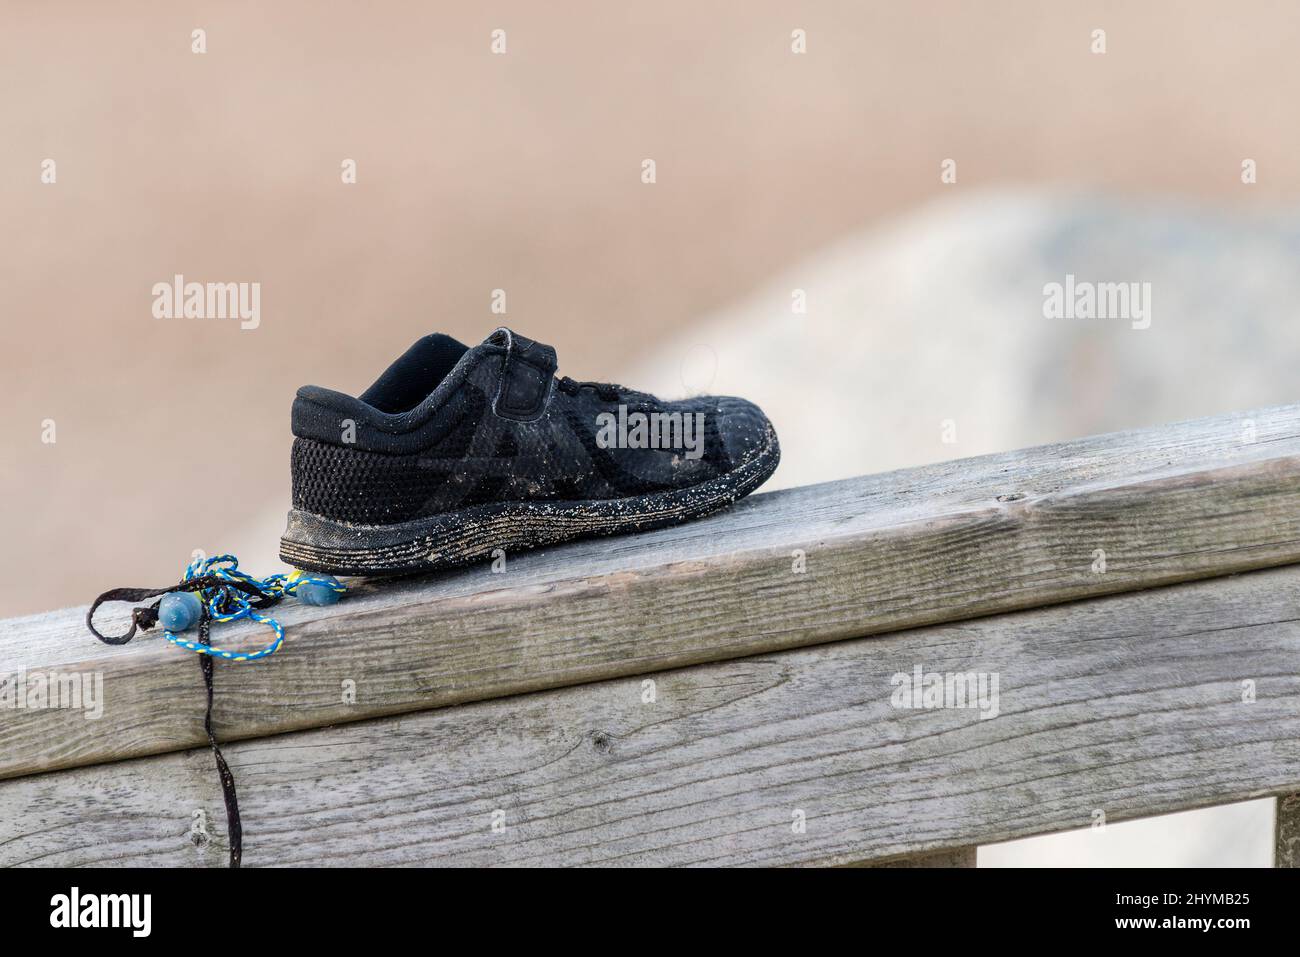 Une petite chaussure de plage laissée sur une rambarde en bois. Banque D'Images